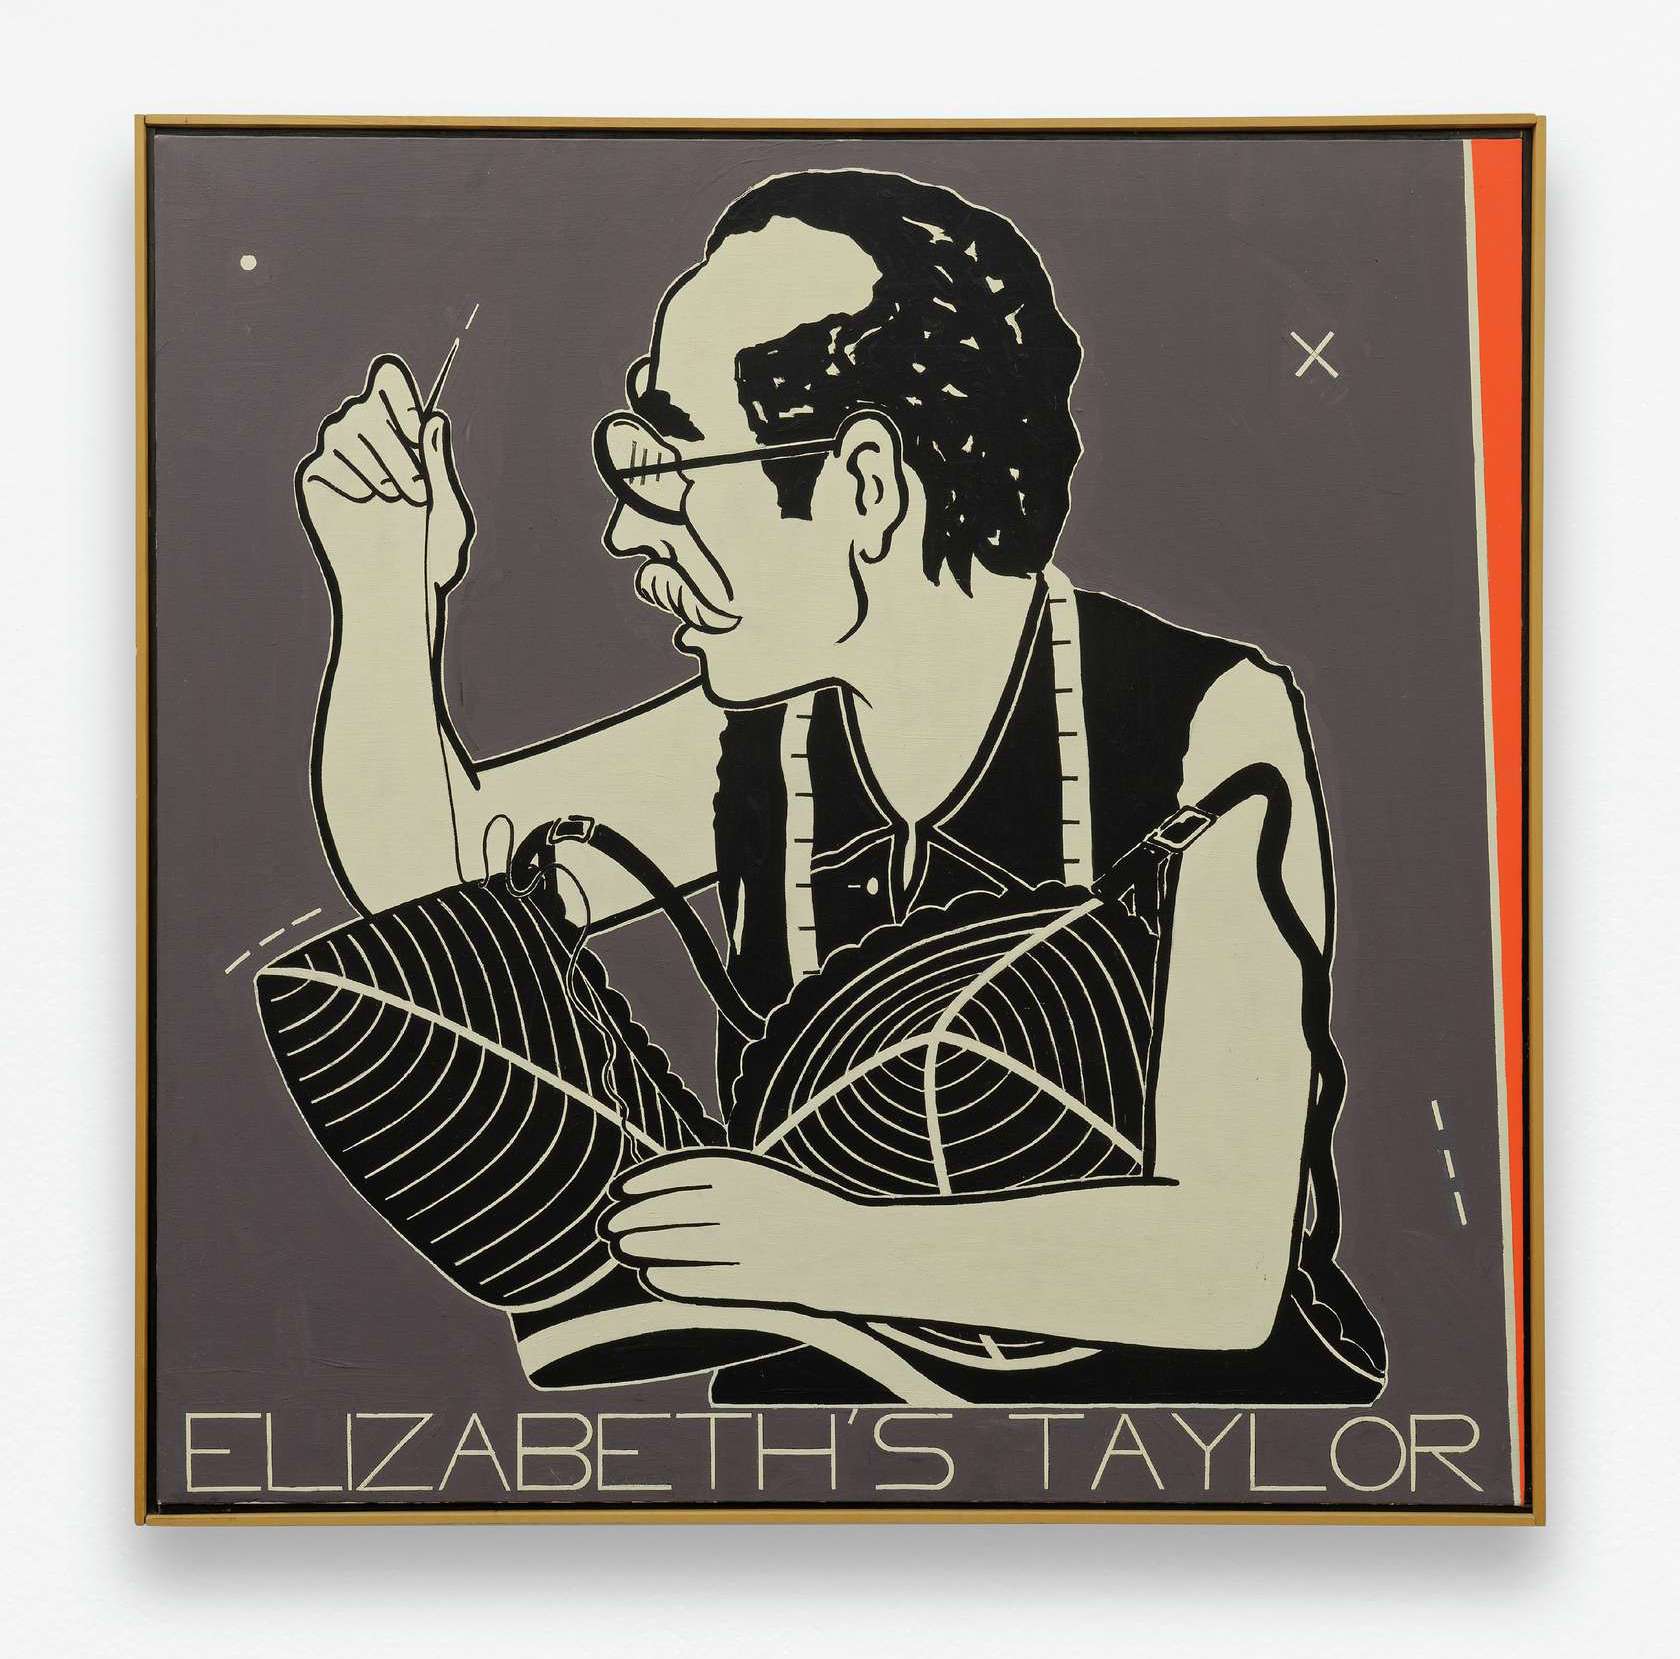 Elizabeth's Taylor